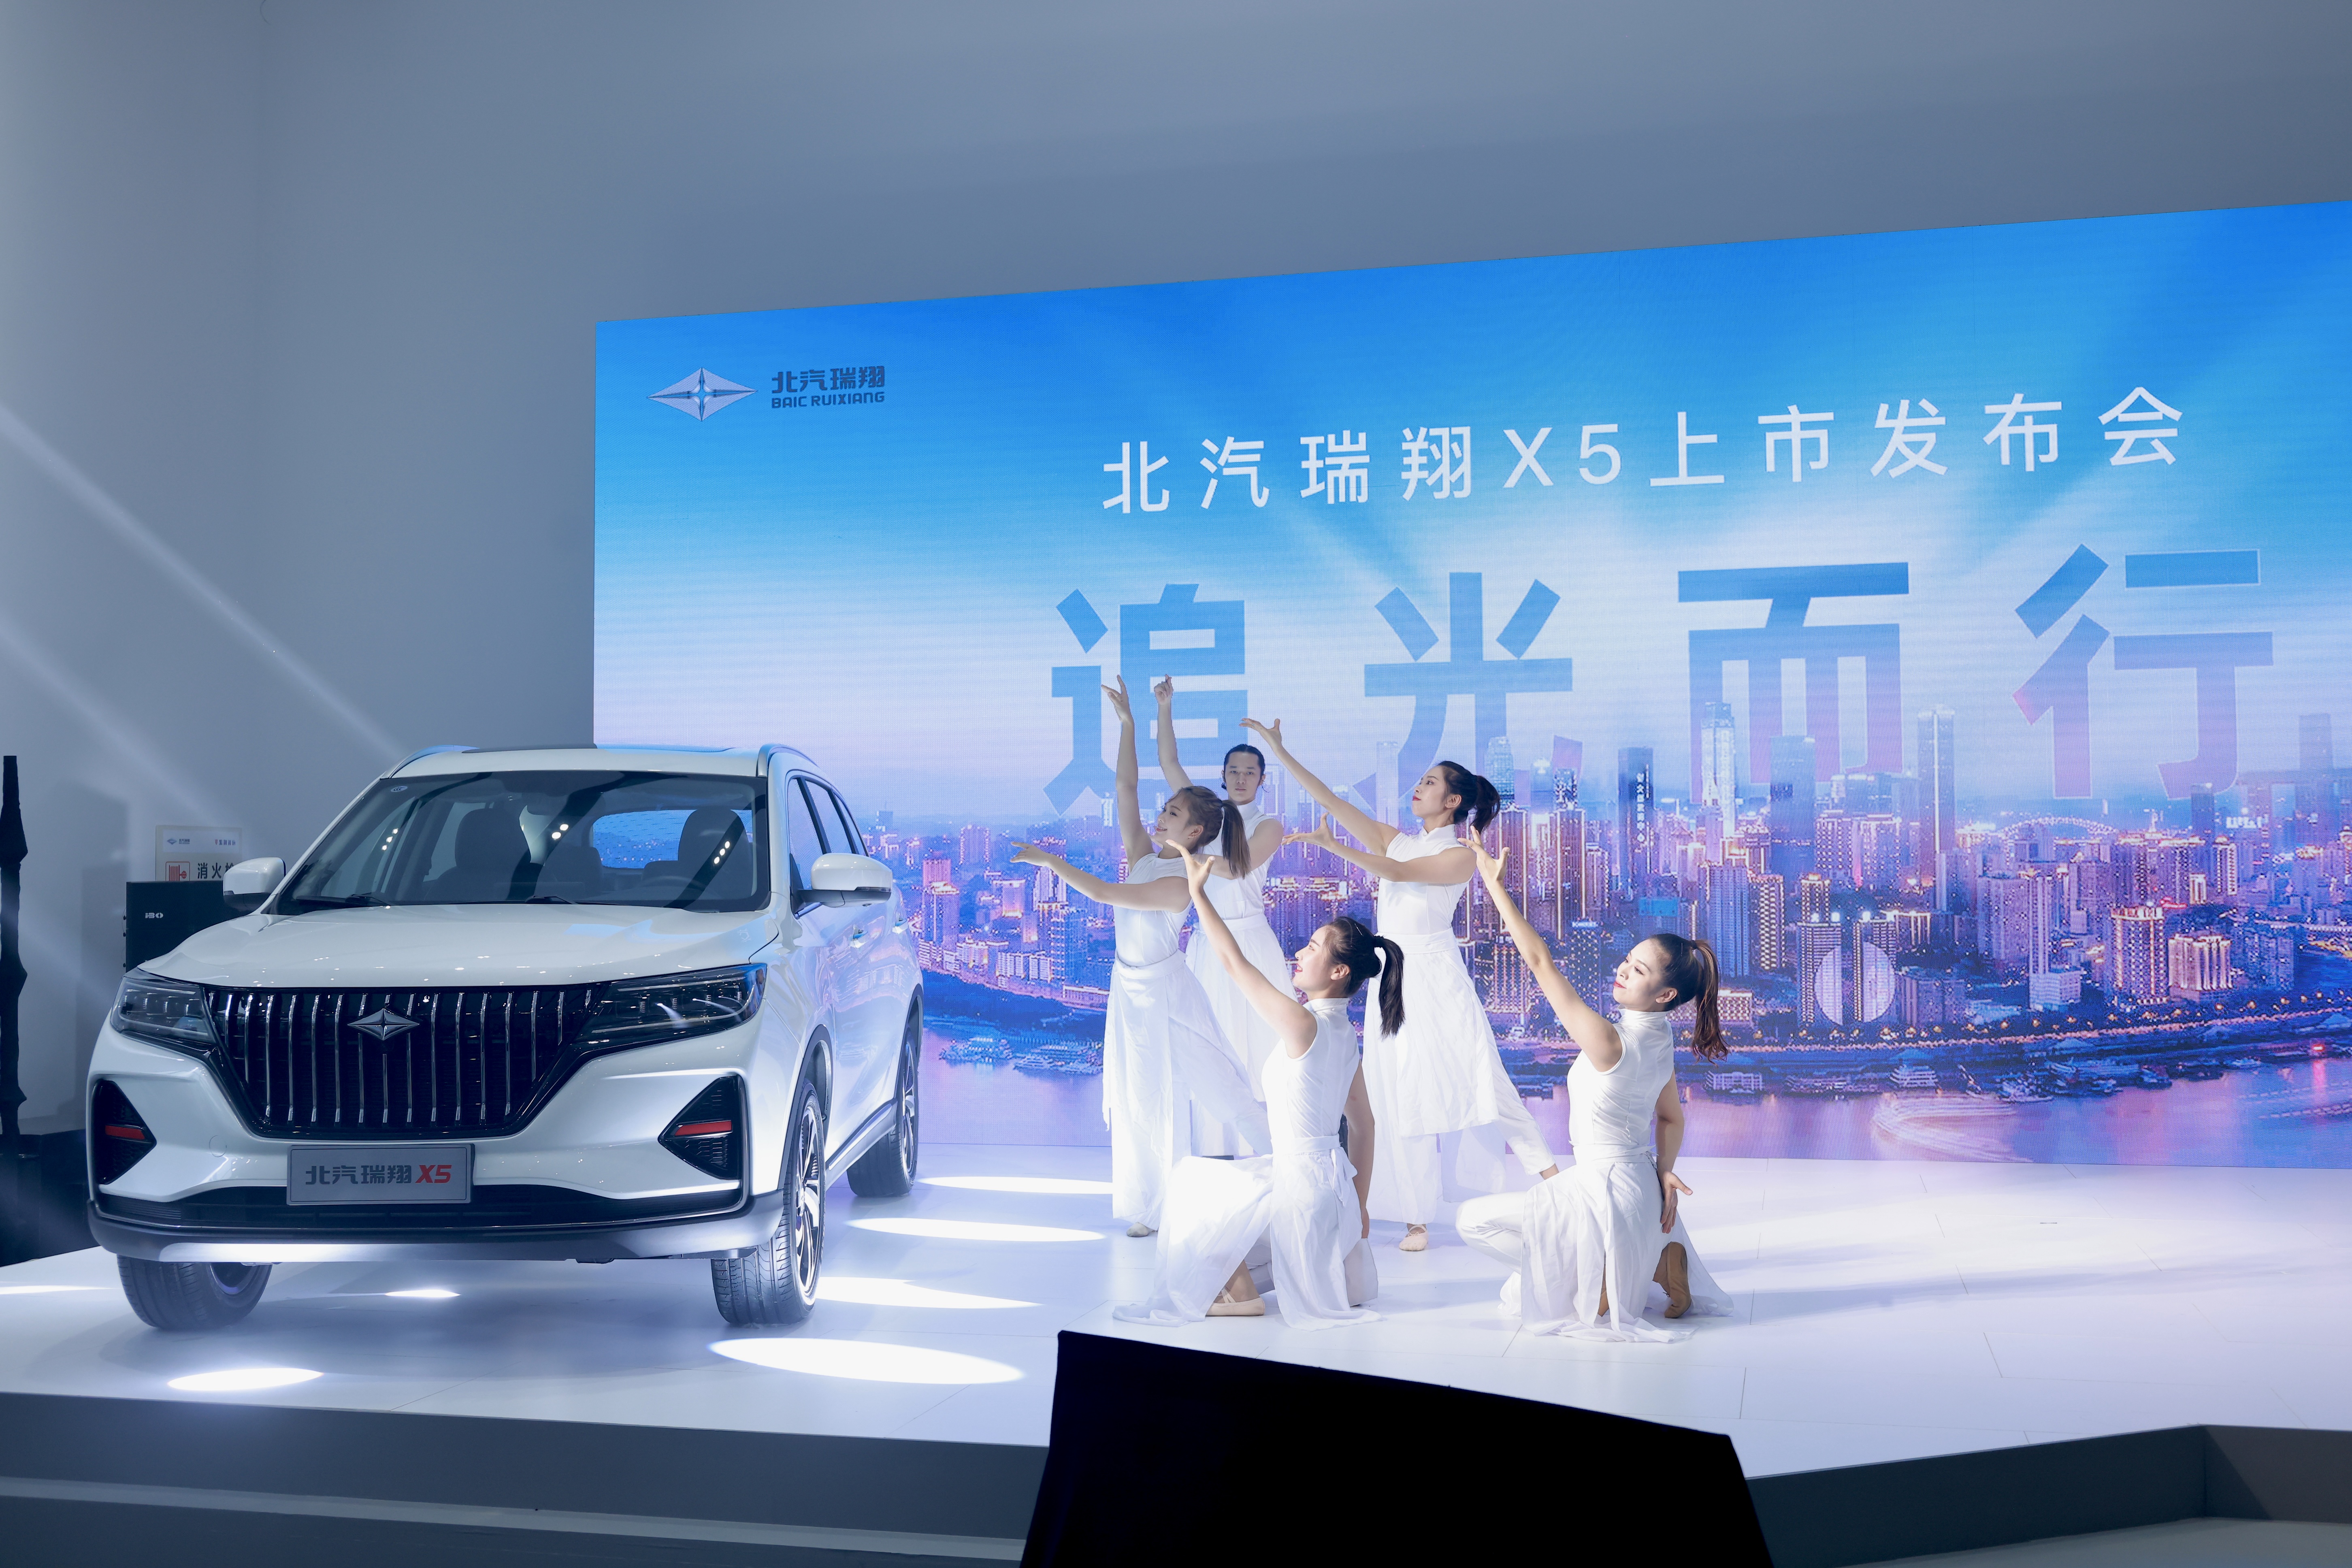 重庆造新汽车品牌北汽瑞翔首款产品上市